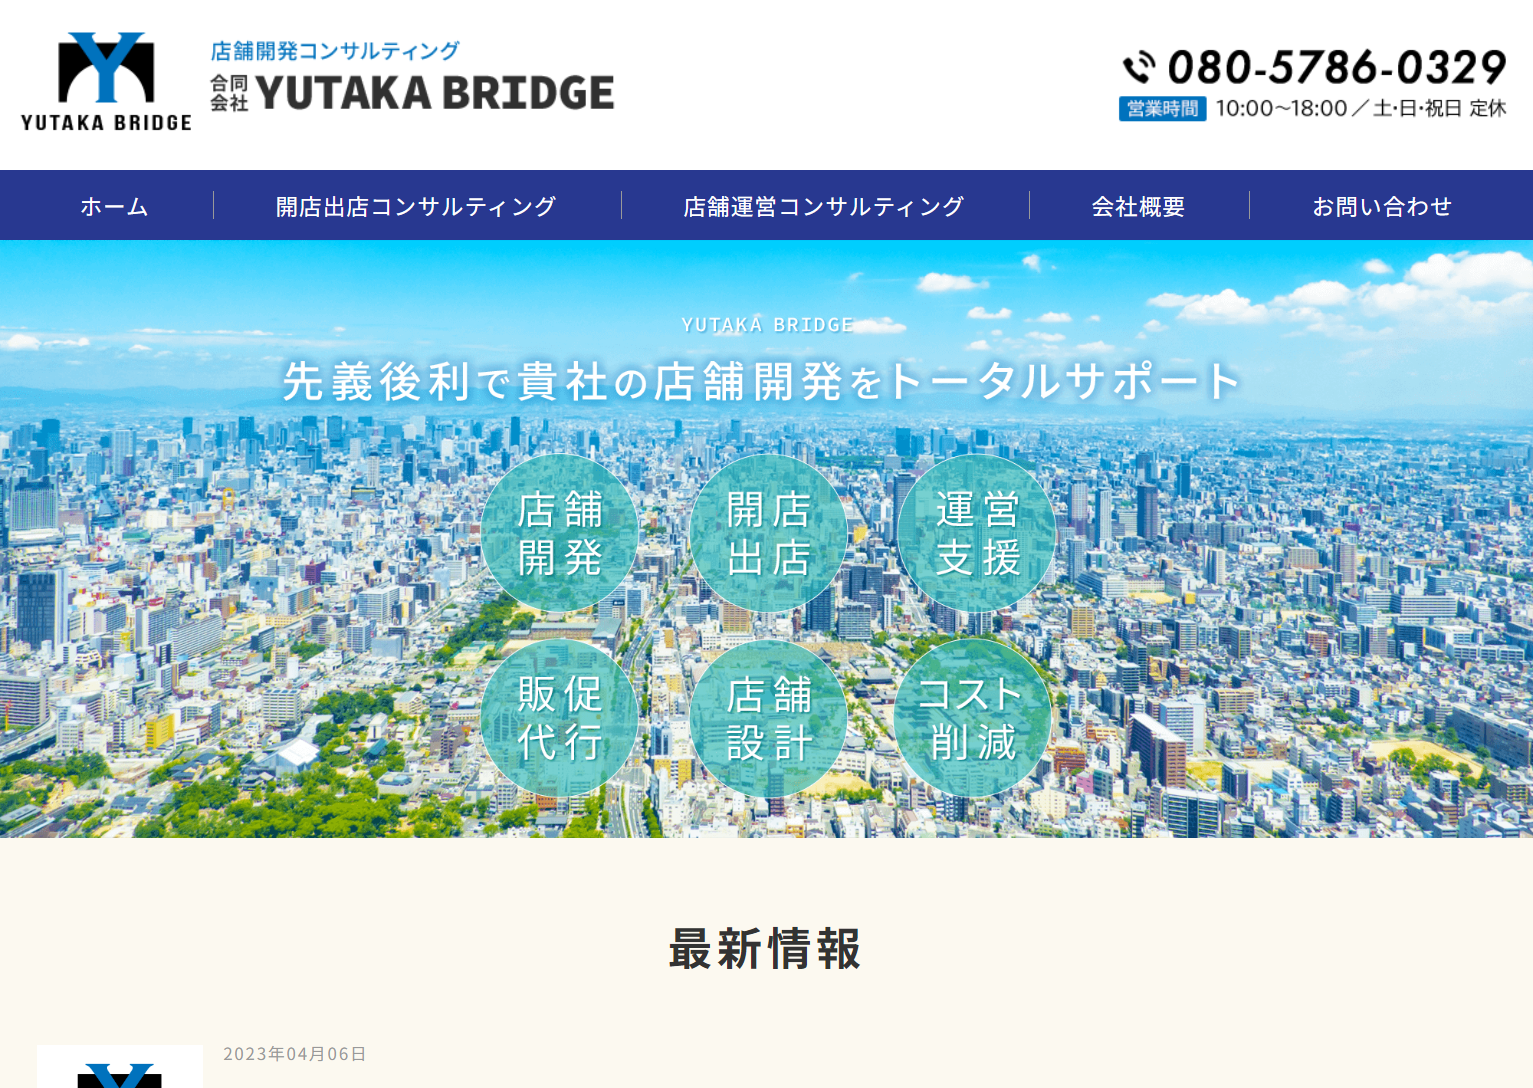 合同会社 YUTAKA BRIDGE